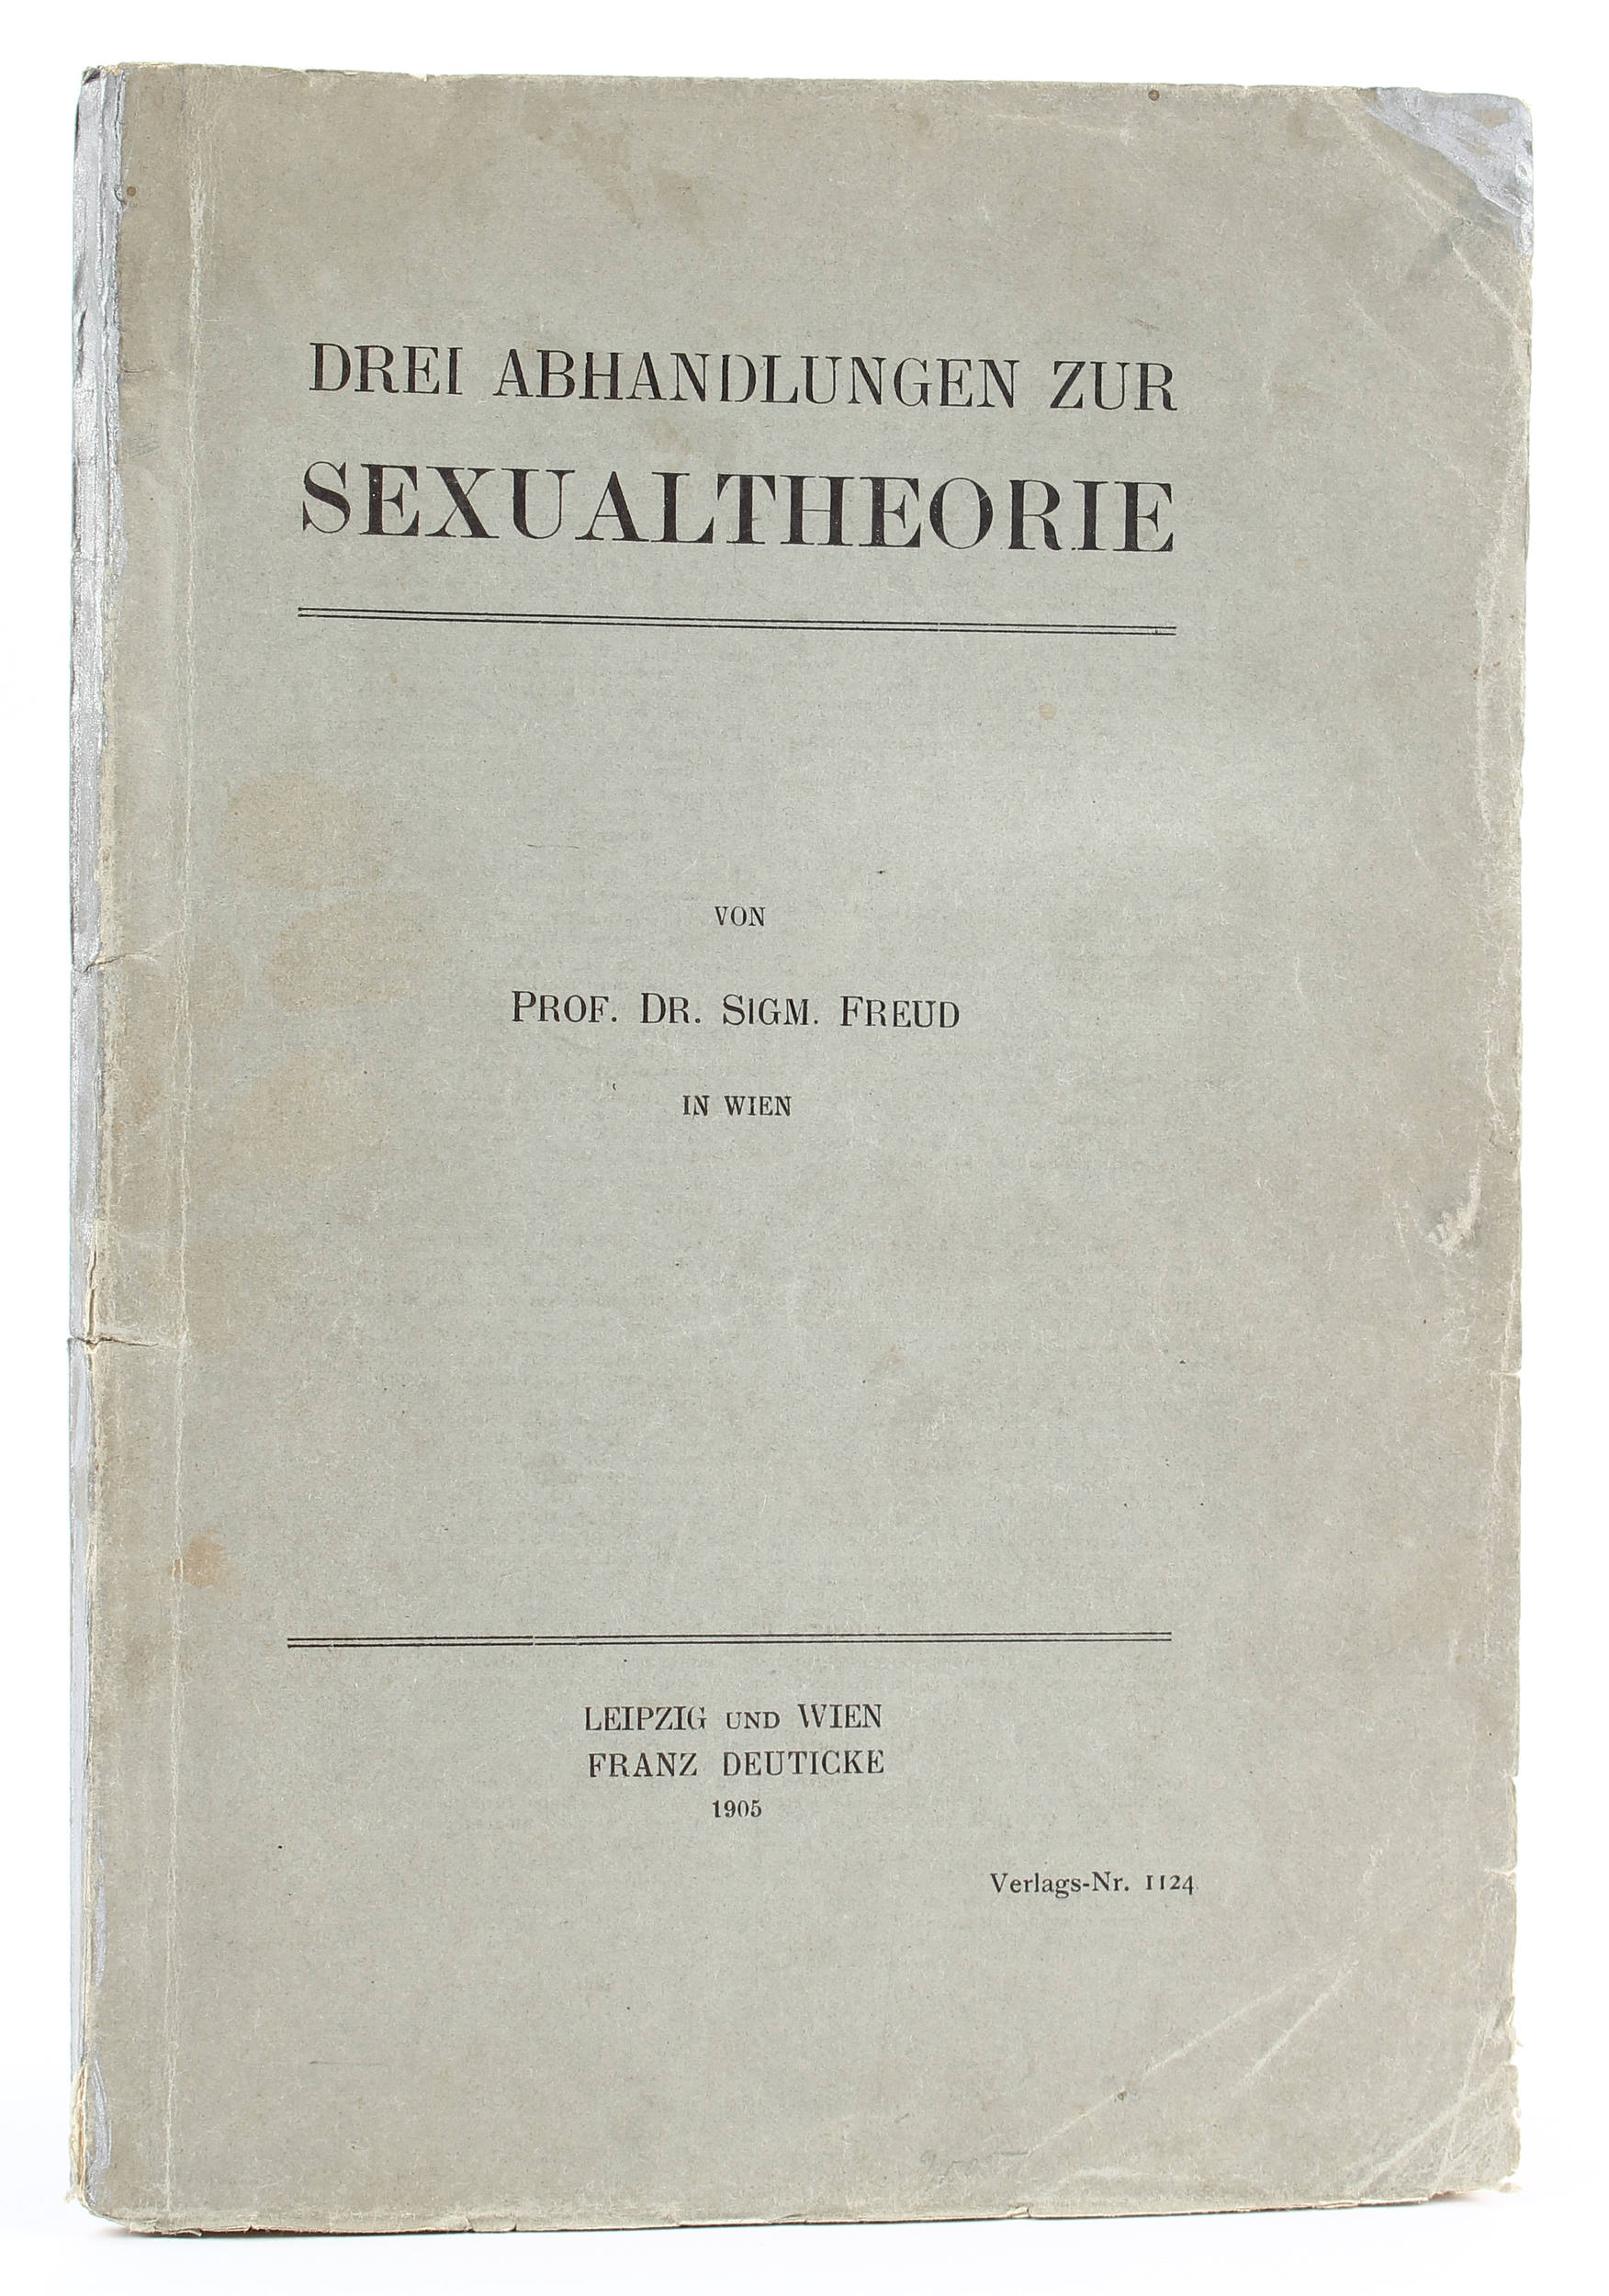 drei abhandlungen zur sexualtheorie